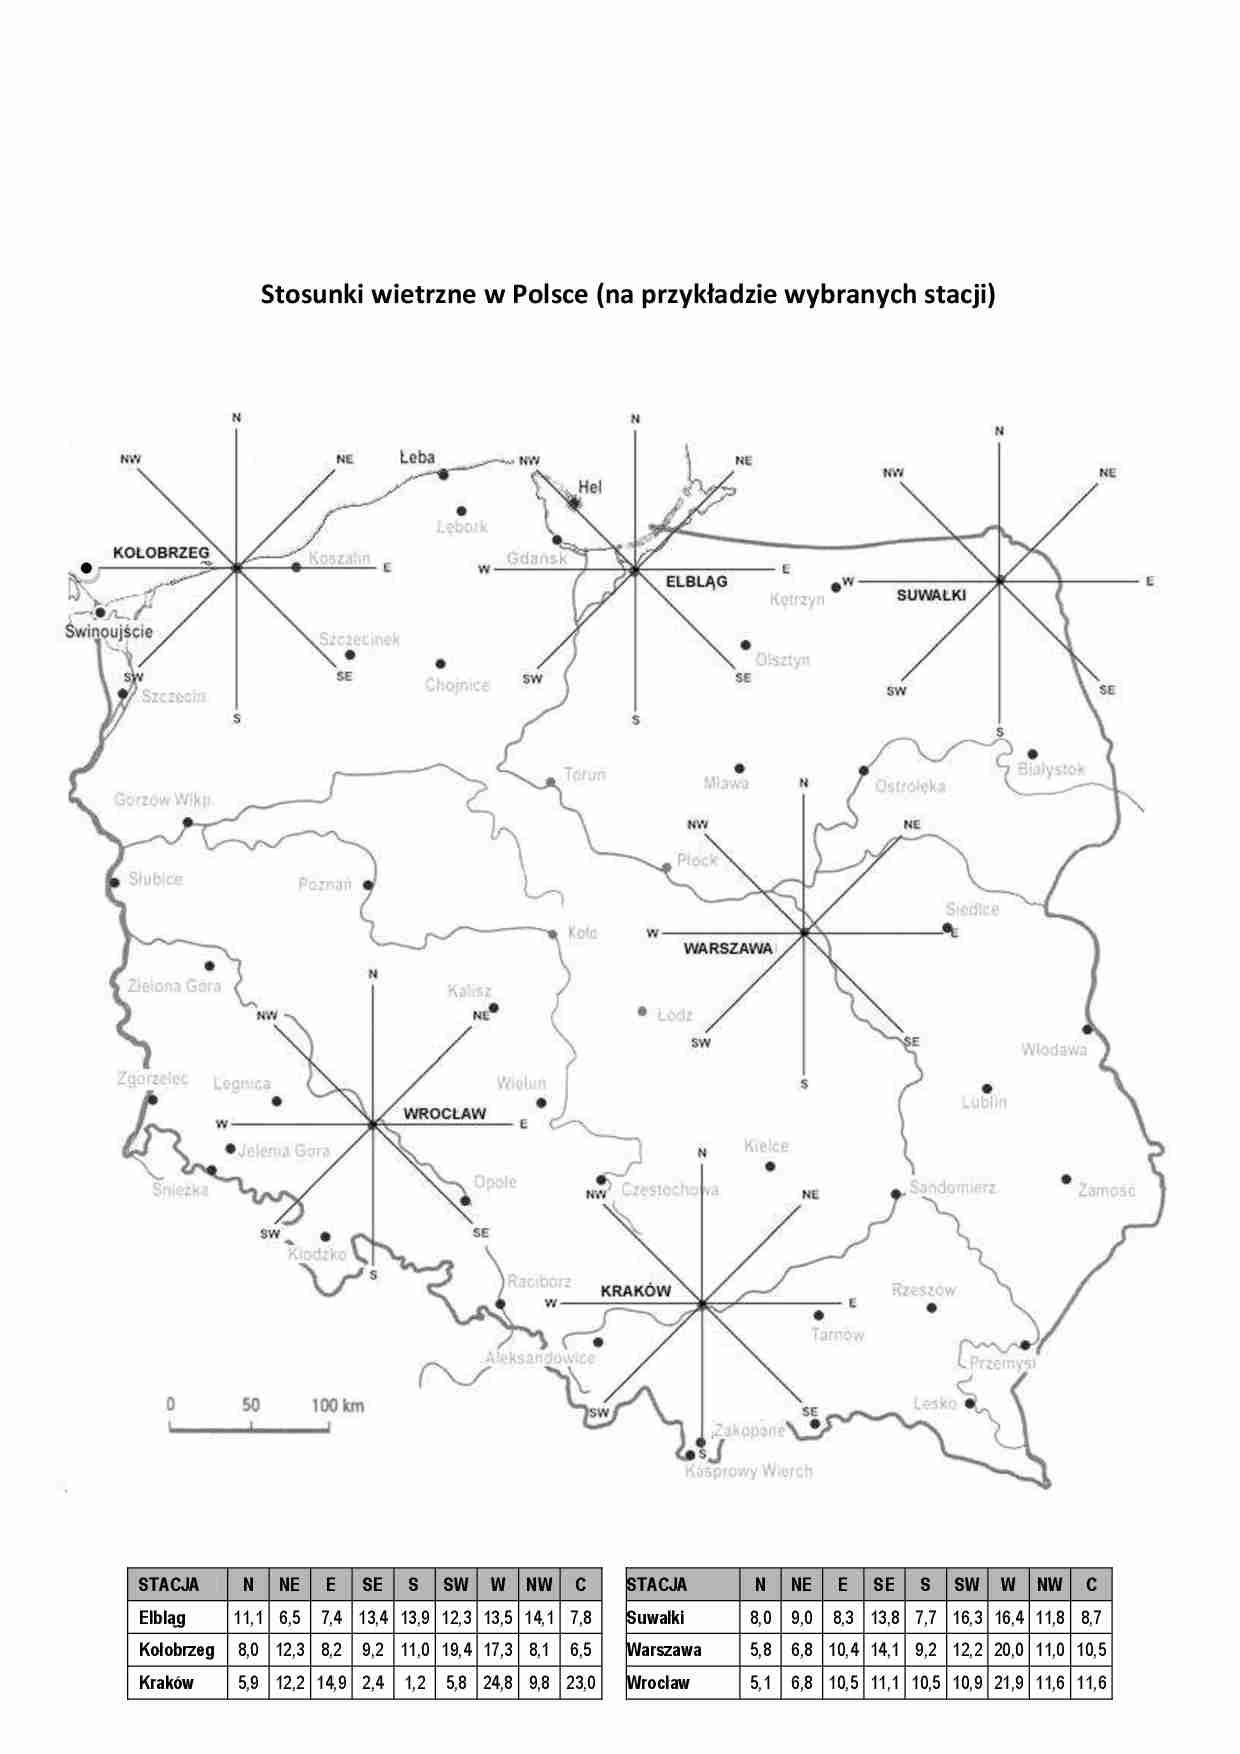 Stosunki wietrzne w Polsce 2 - strona 1